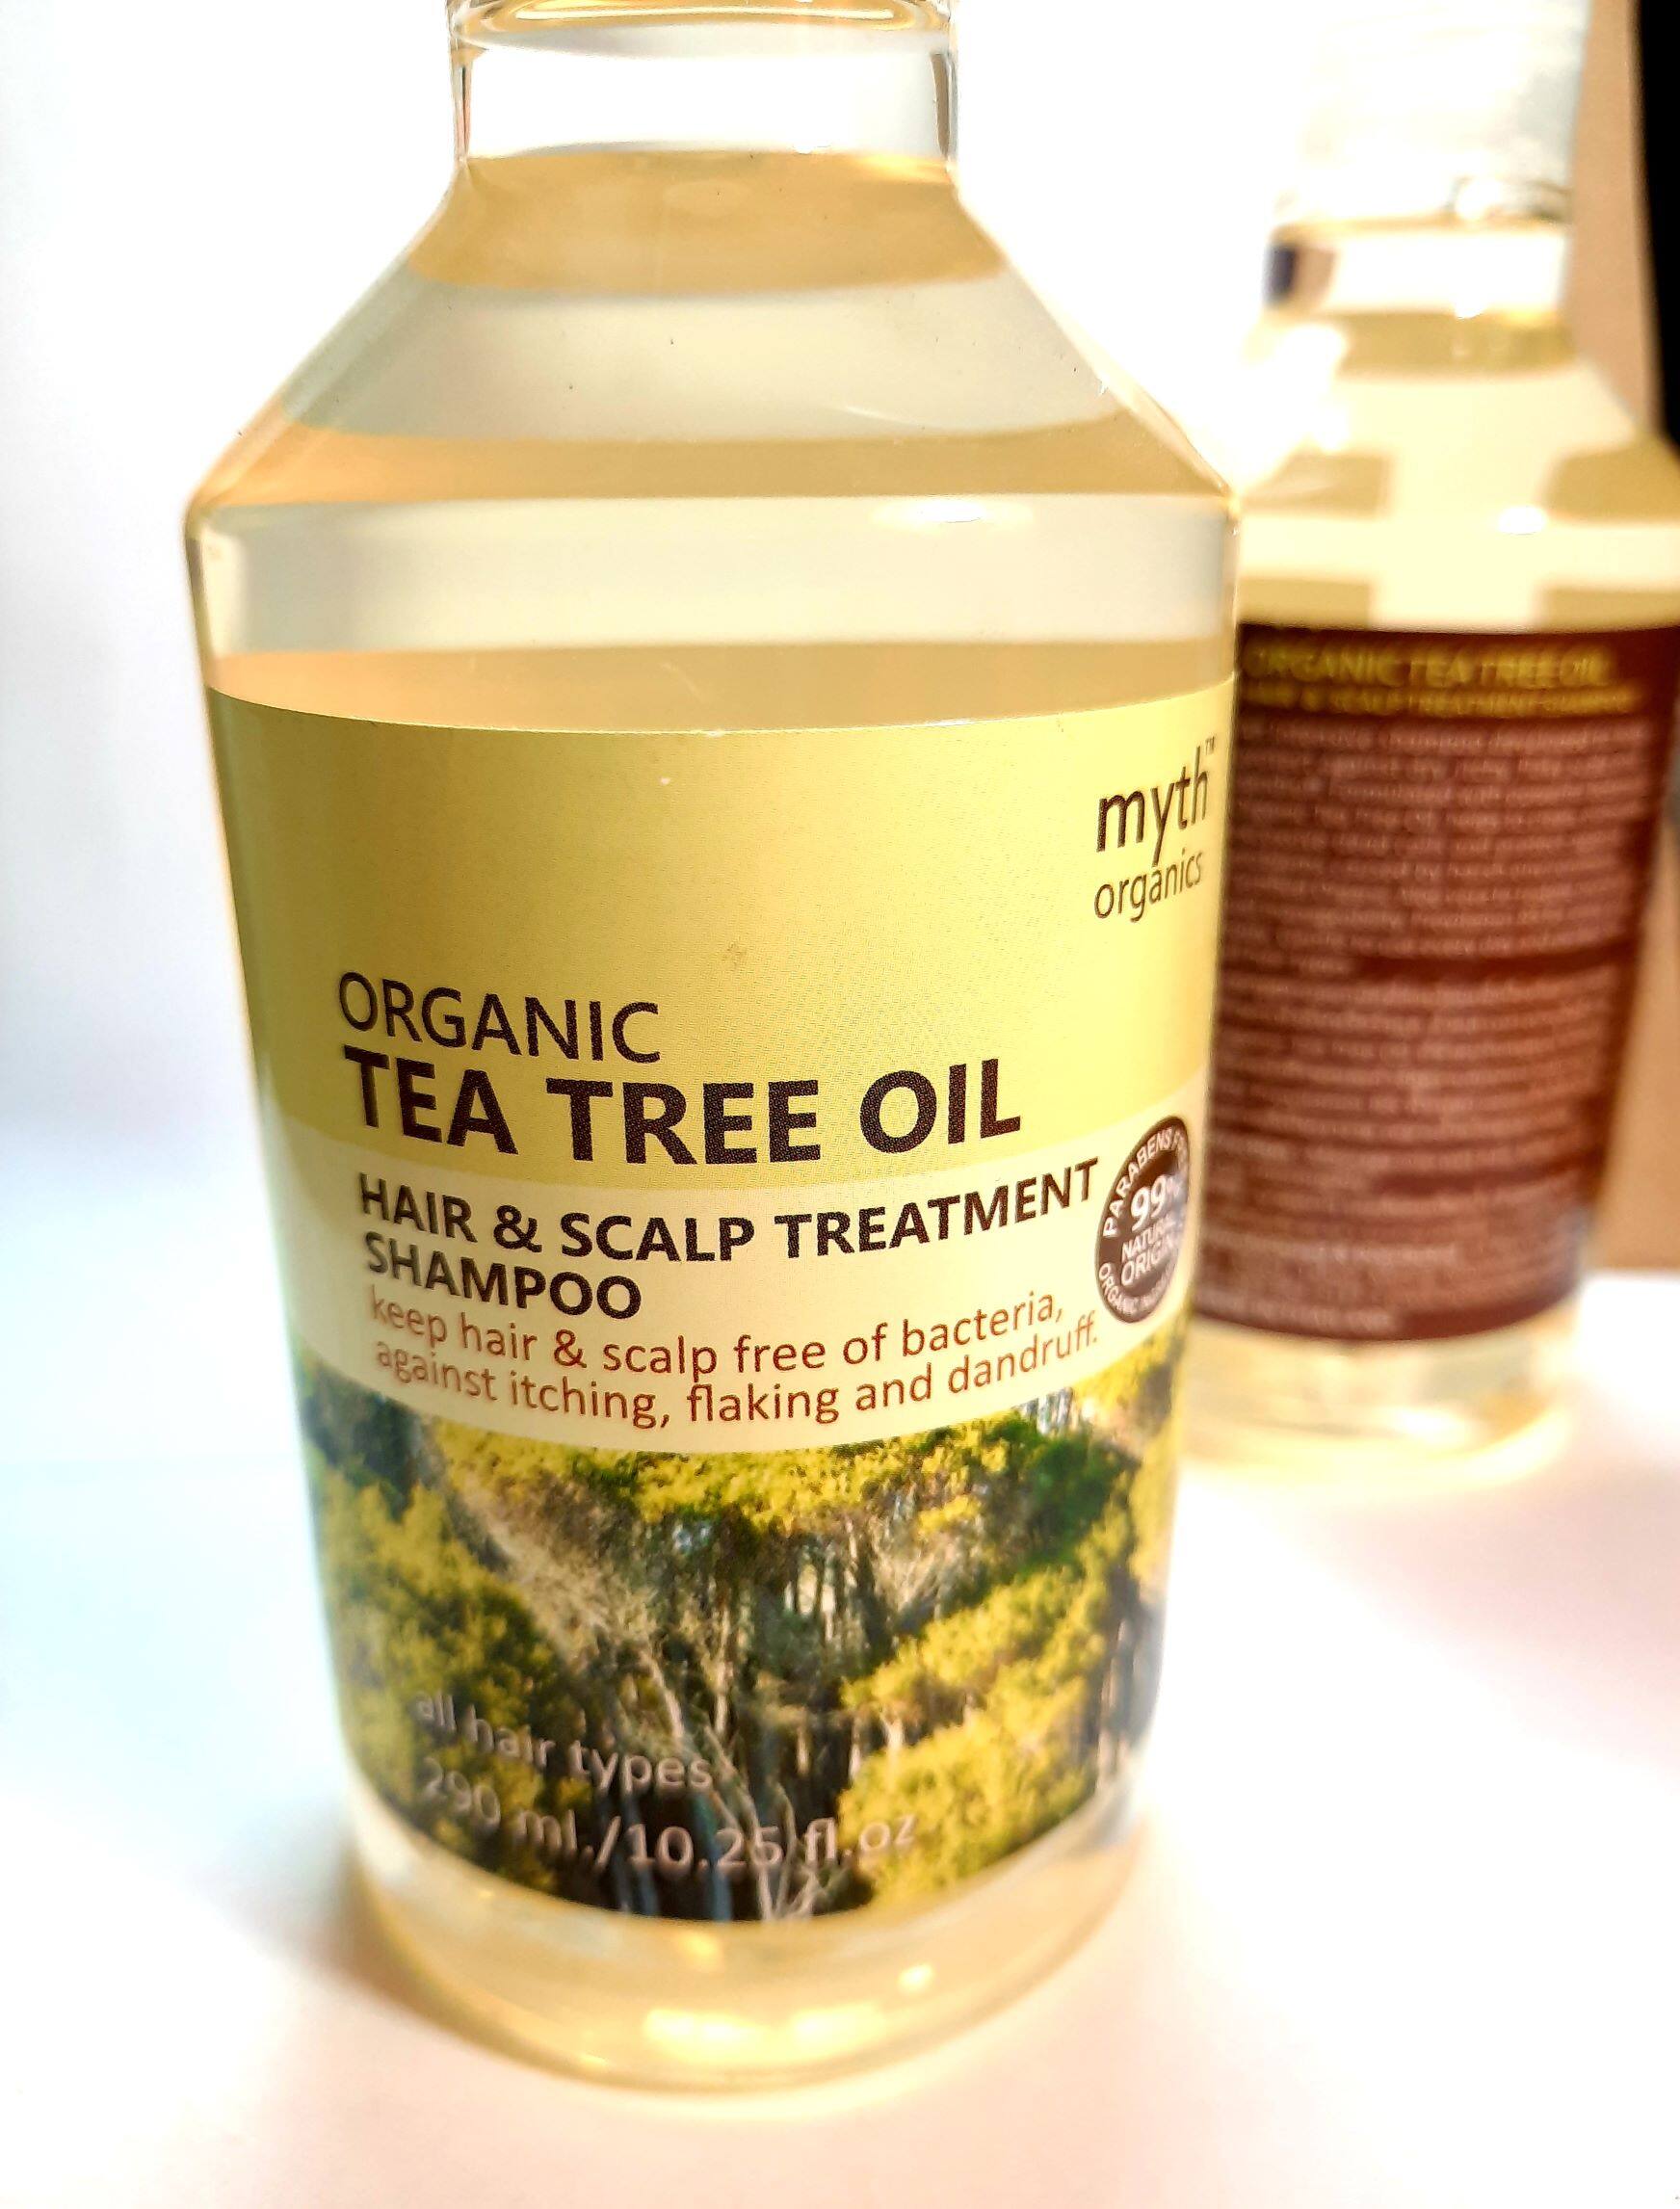 แนะนำ 290ml/10.25fl.oz myth Organic TEA TREE OIL Hair & Scalp Treatment Shampoo PARABENS FREE 99% Natural Origin+ProVitamin B5 for all hair types แชมพูออแกนิคทีทรีออยล์ อ่อนโยน ปราศจากสารเคมีอันตราย ป้องกันรังแค หนังศรีษะแห้งคัน ฟื้นฟูผมเสีย เหมาะกับทุกสภาพผม